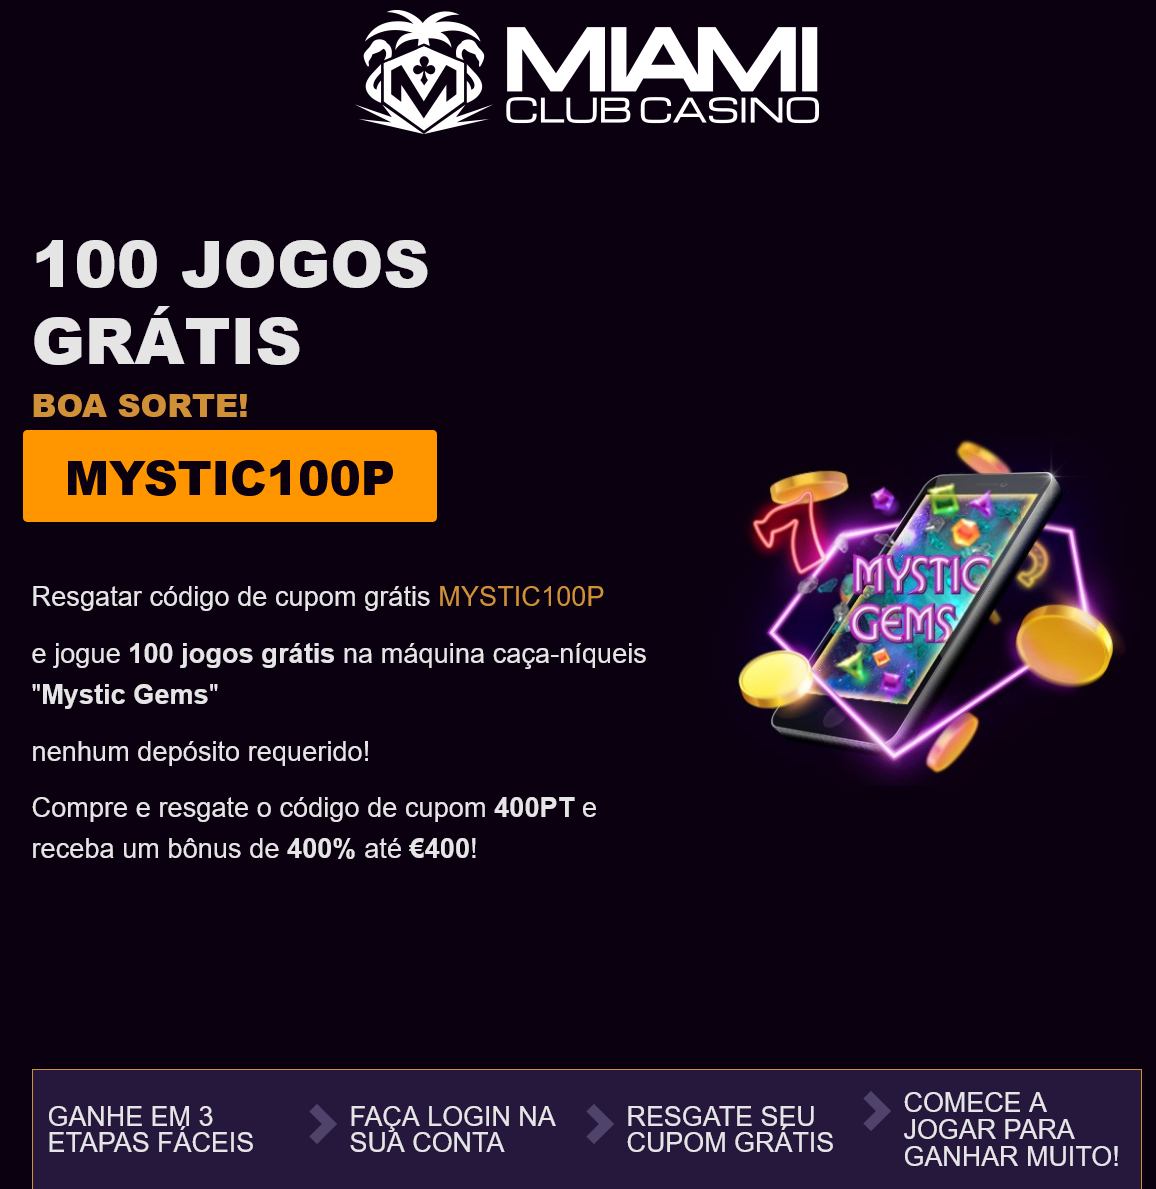 Miami Club 100 Free Spins